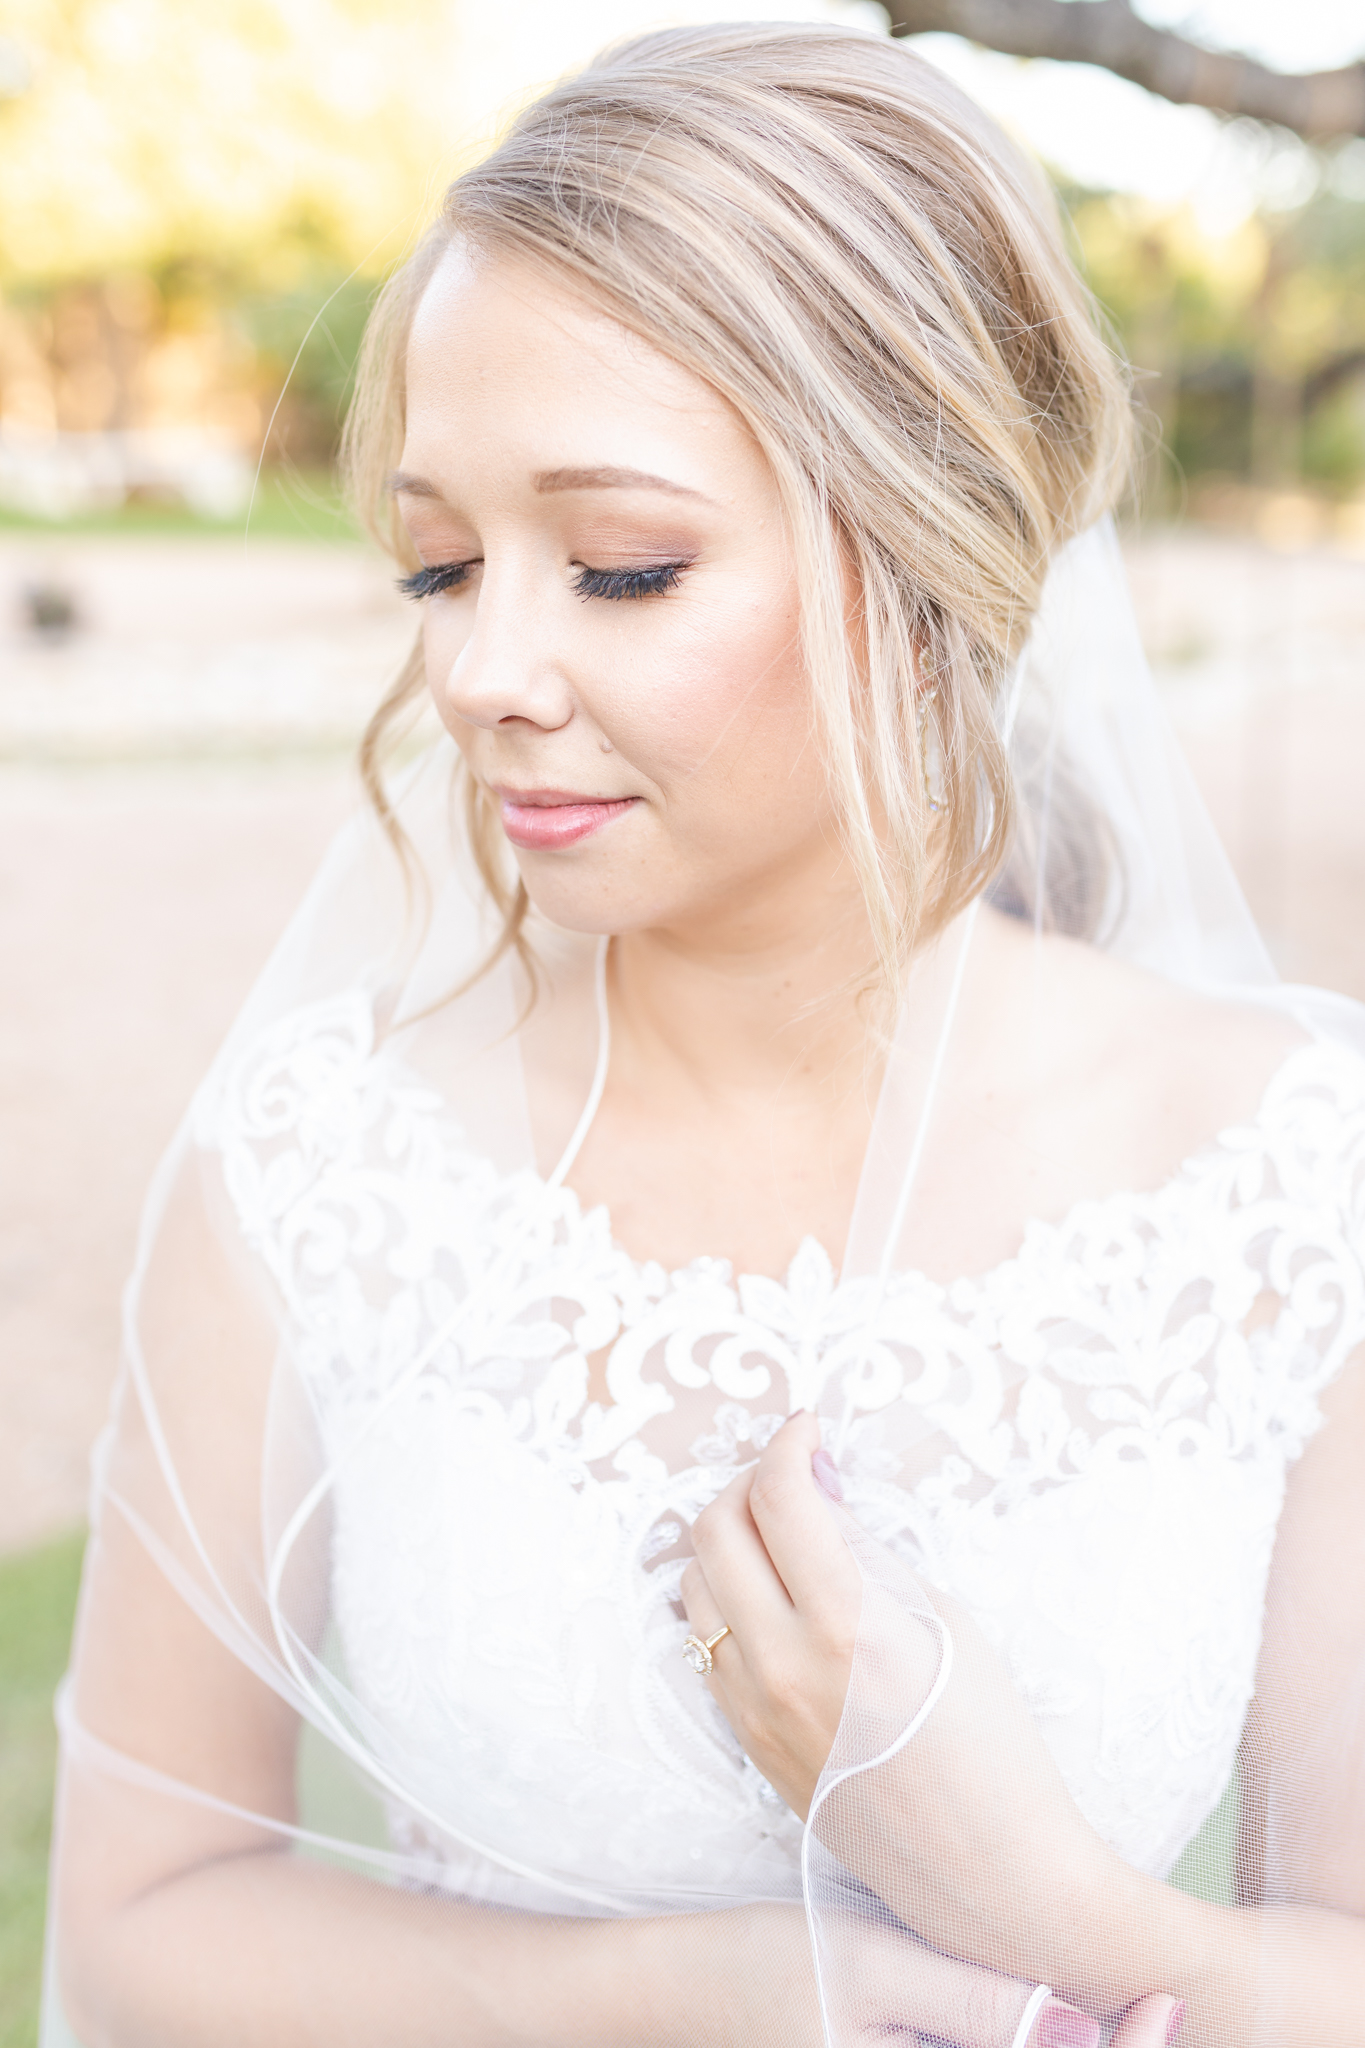 A Bridal Session at Western Sky in Bulverde, TX by Dawn Elizabeth Studios, San Antonio Wedding Photographer